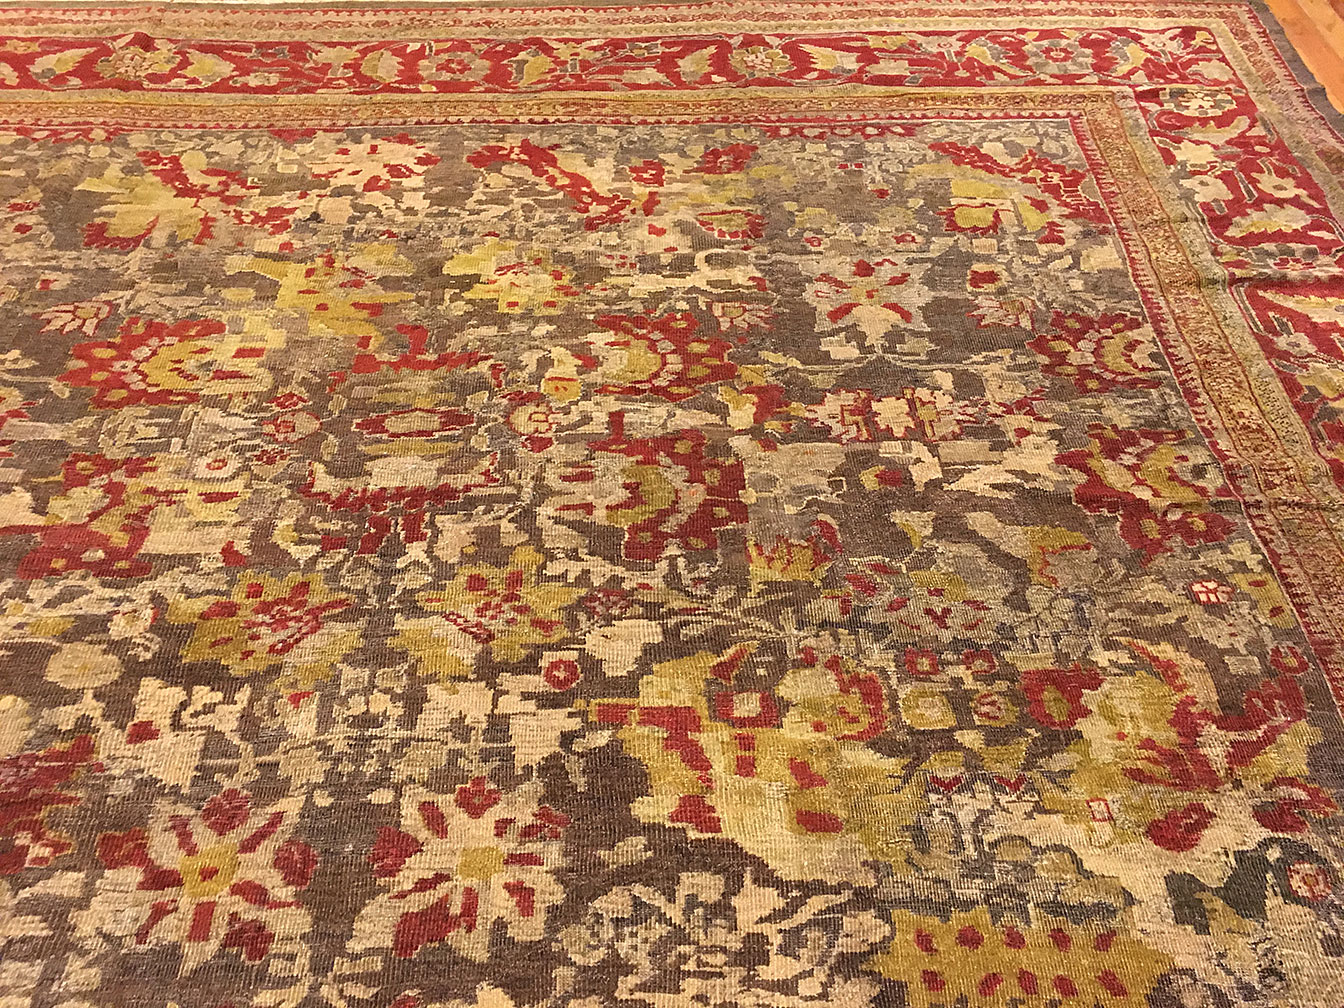 Antique sultan abad Carpet - # 52977